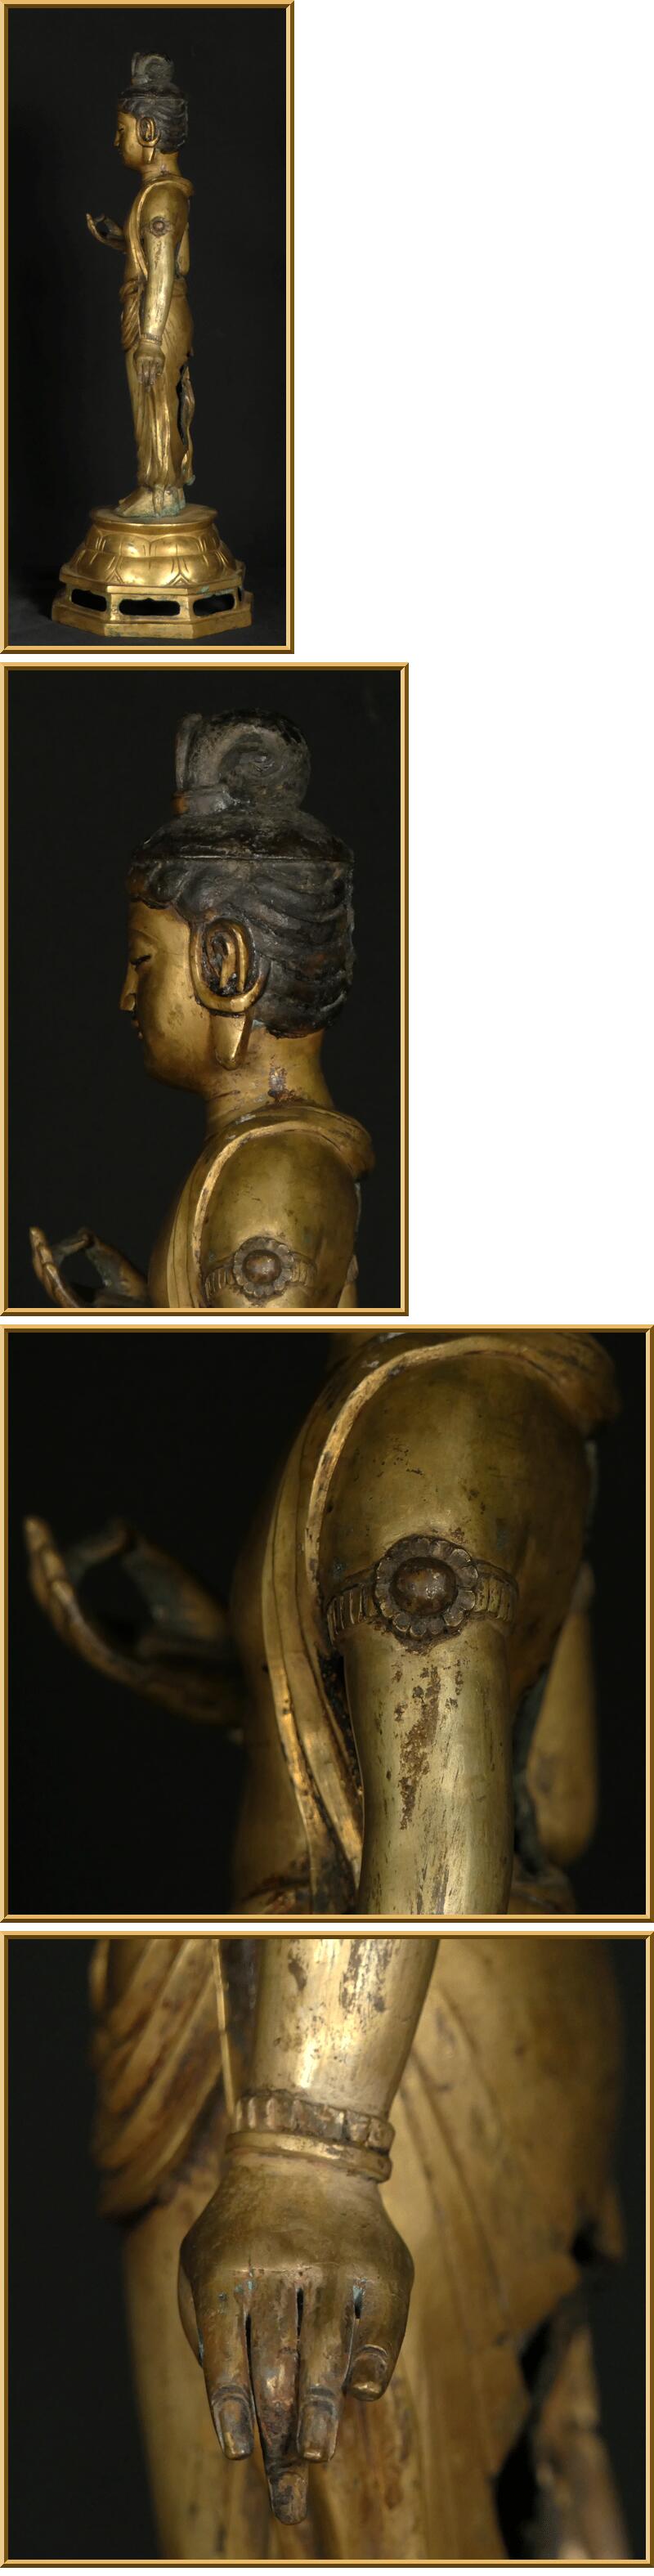 セール必勝法 菩薩 立像 金銅 約8.8kg 高さ約52cm 高麗 仏像 朝鮮美術